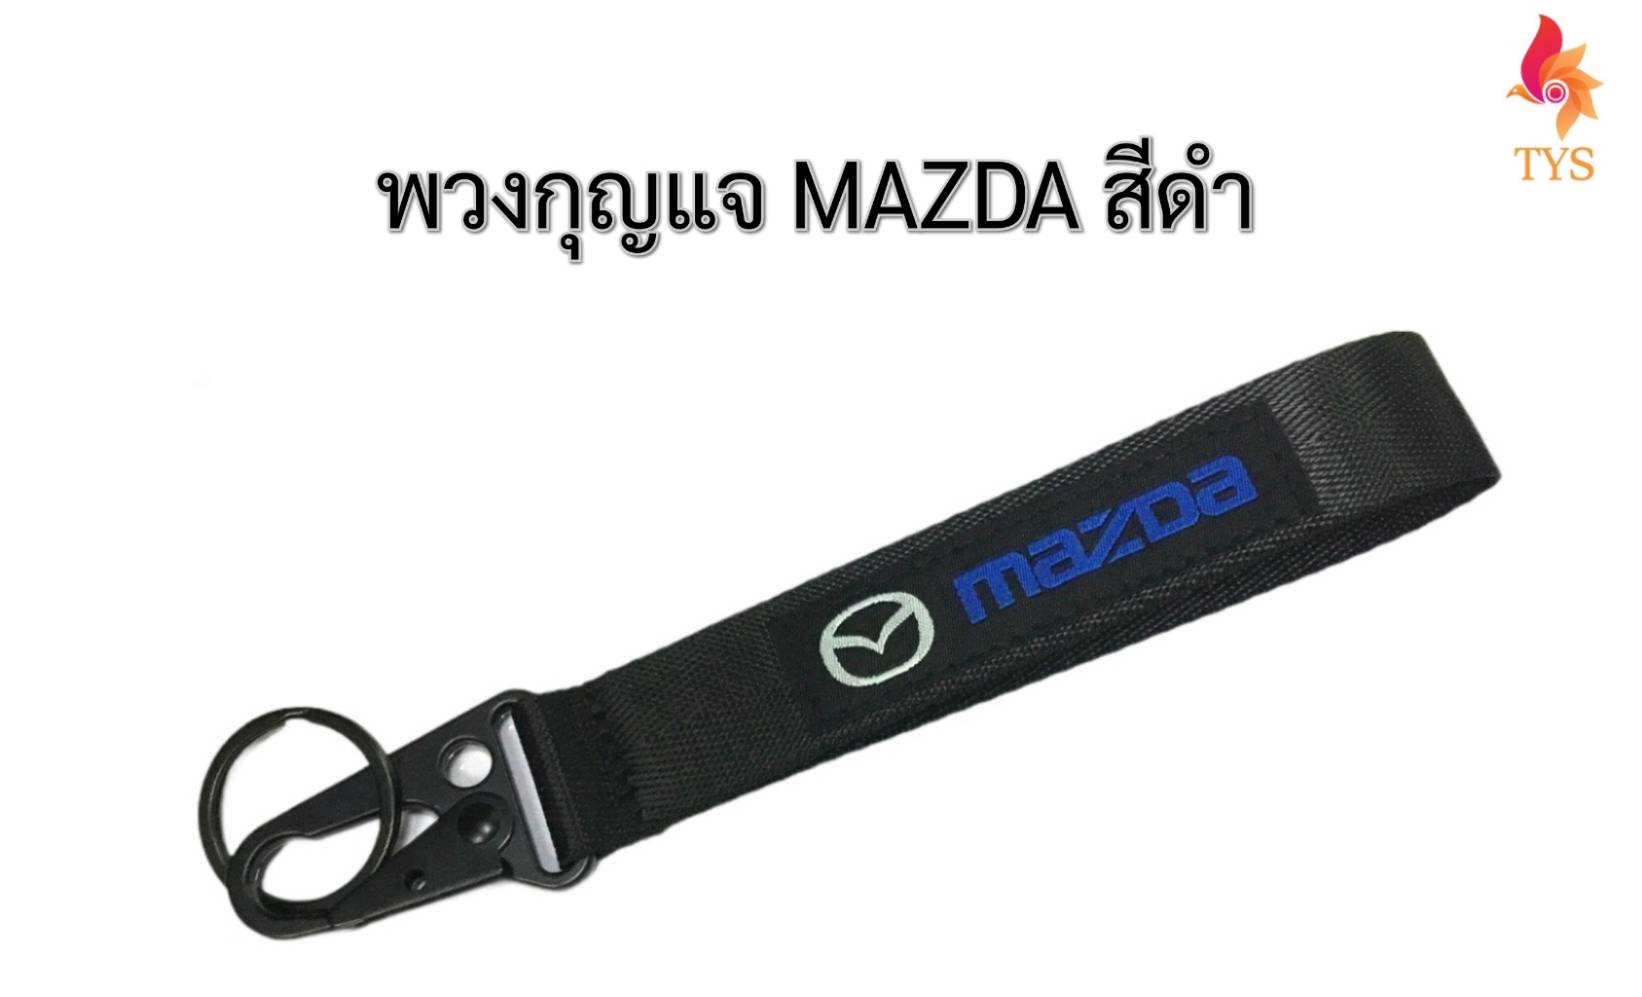 พวงกุญแจแบบสายคล้อง พวงกุญแจรถยนต์ ลายMAZDA สีดำ